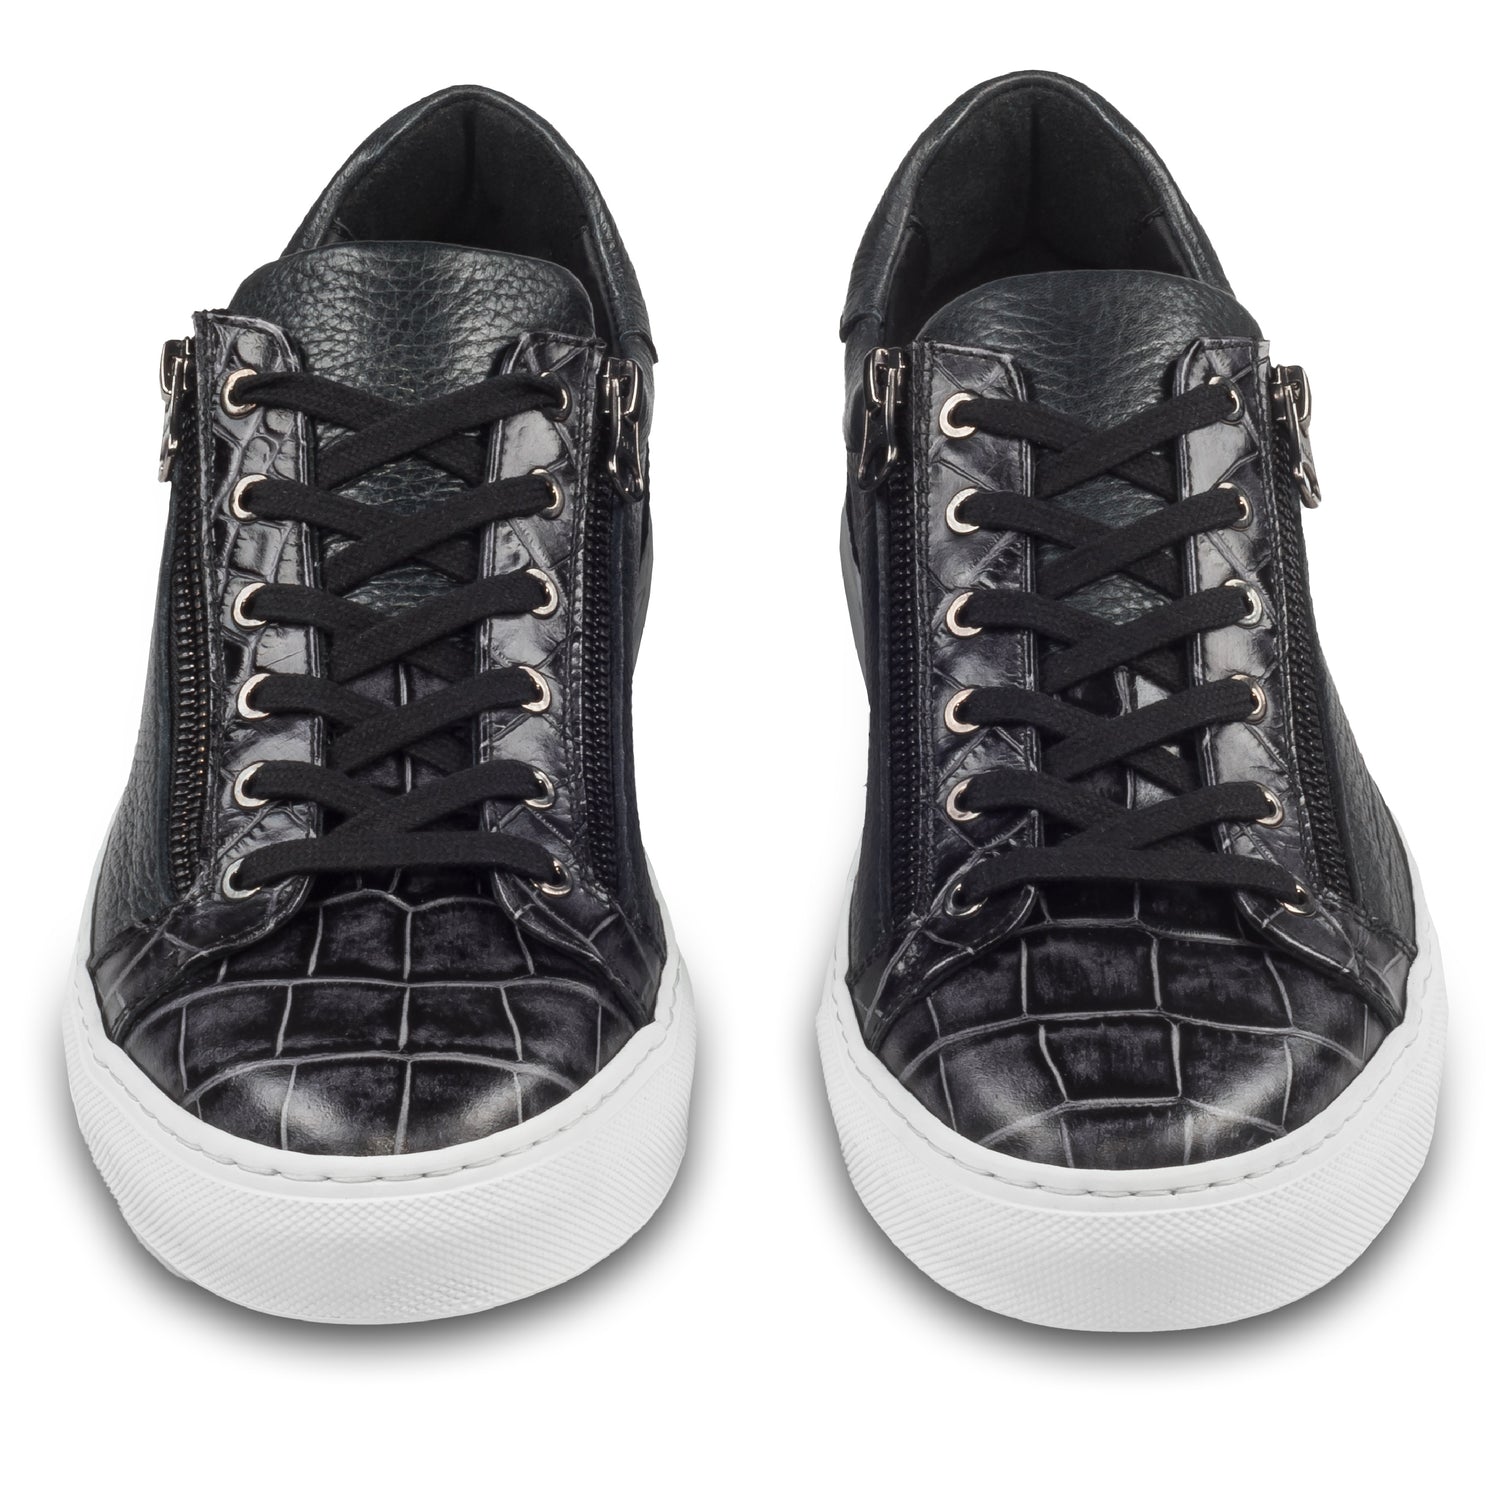 Lorenzi Italienische Herren Kalbsleder Sneaker in schwarz mit Kroko-Optik und weißer Sohle. Handgefertigt. Paarweise Ansicht von vorne.